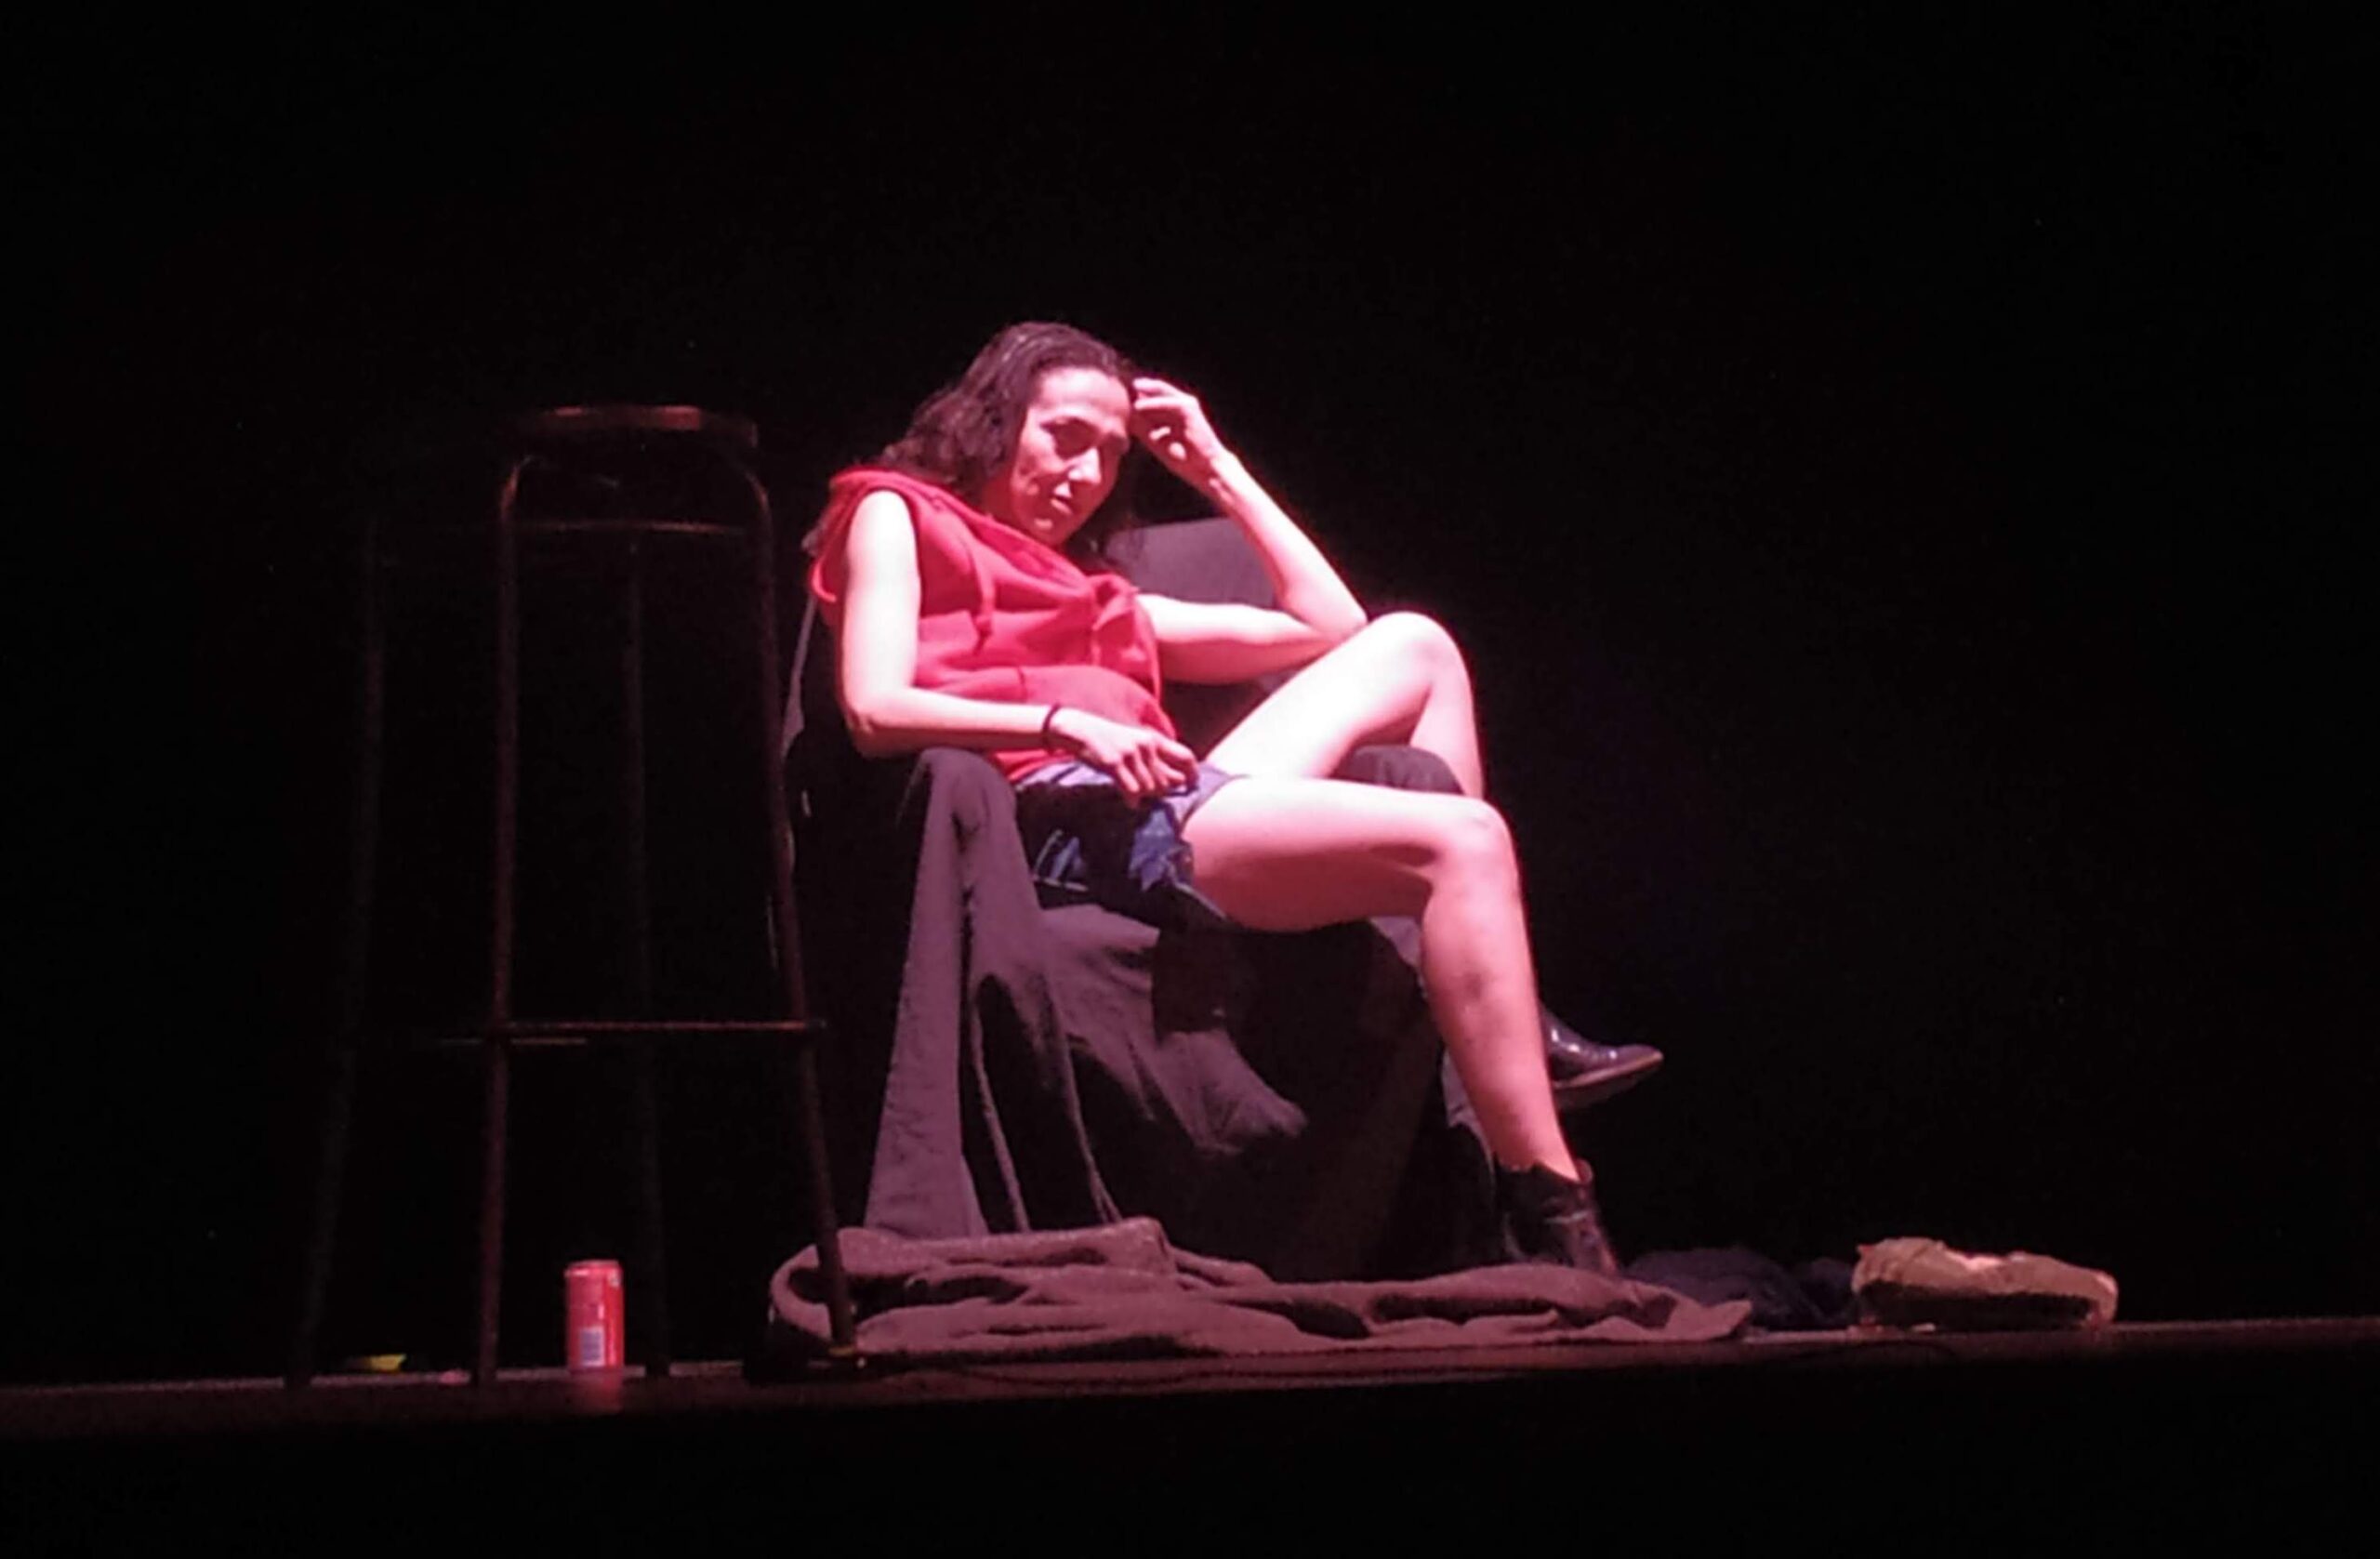 Dependence Day: lo spettacolo “Rien ne va plus” di Marina Romondia al Teatro Monticello di Grottaglie